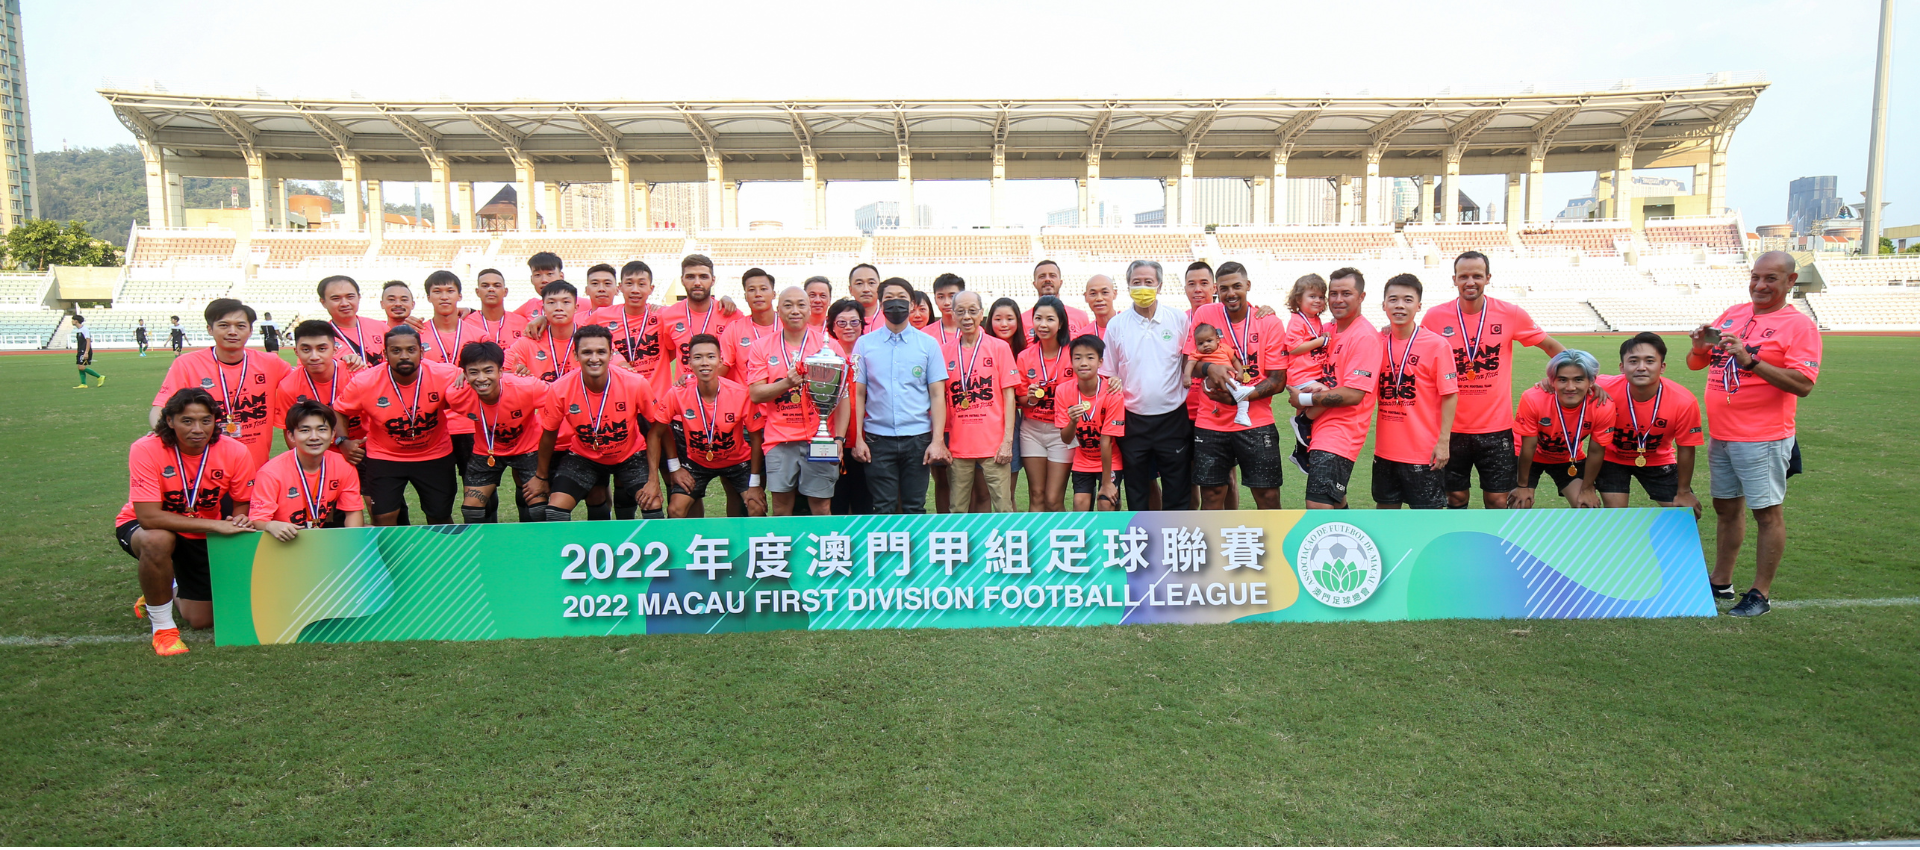 Macau Futebol Clube - FIM DE JOGO! Com o resultado o Macau Futsal fica com  o vice-campeão do estadual @fnfsoficial feminino.